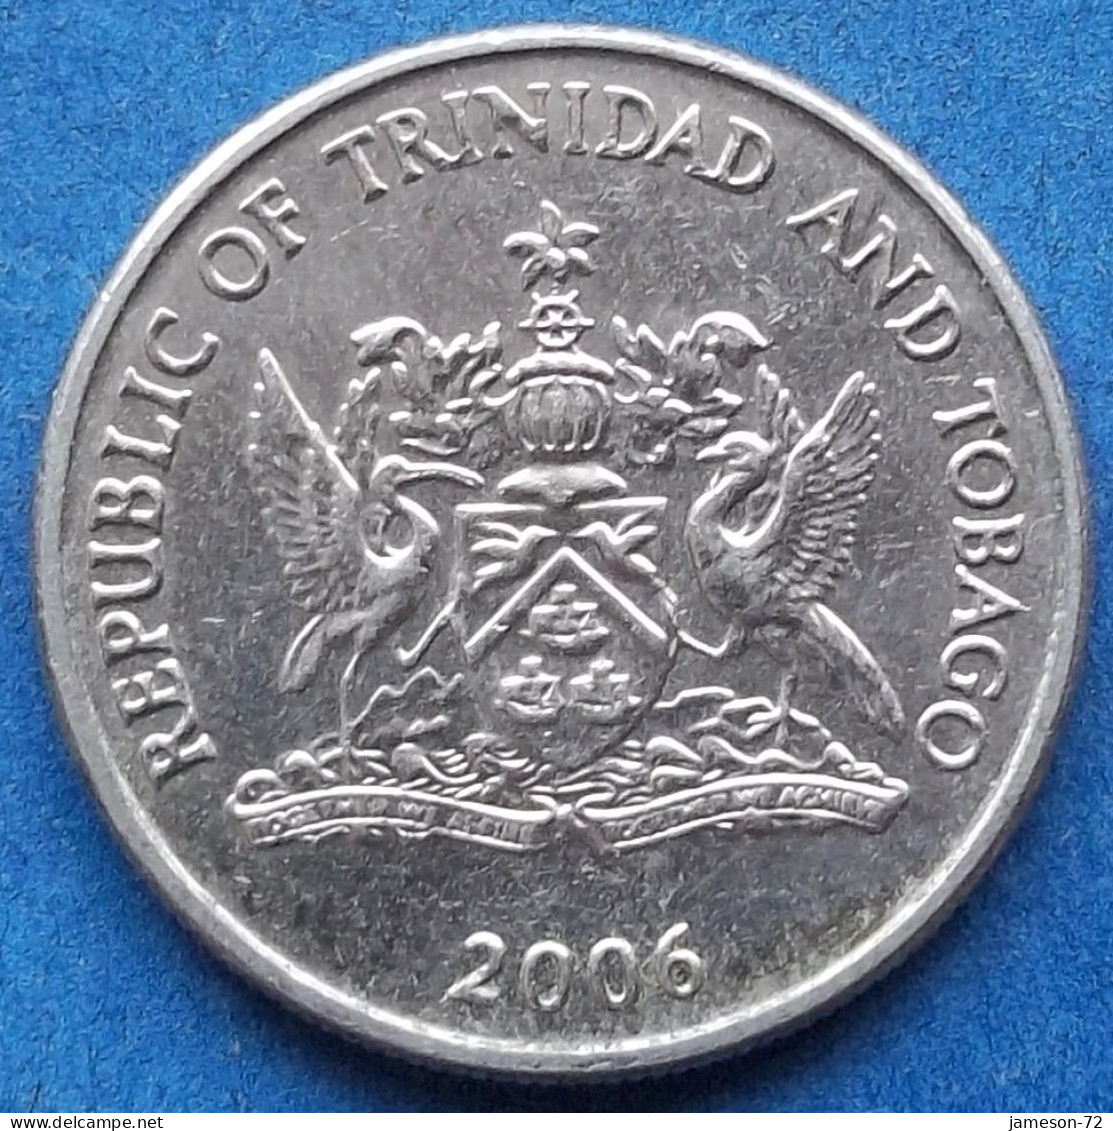 TRINIDAD & TOBAGO - 25 Cents 2006 "Chaconia" KM# 32 Republic (1976) - Edelweiss Coins - Trinidad Y Tobago